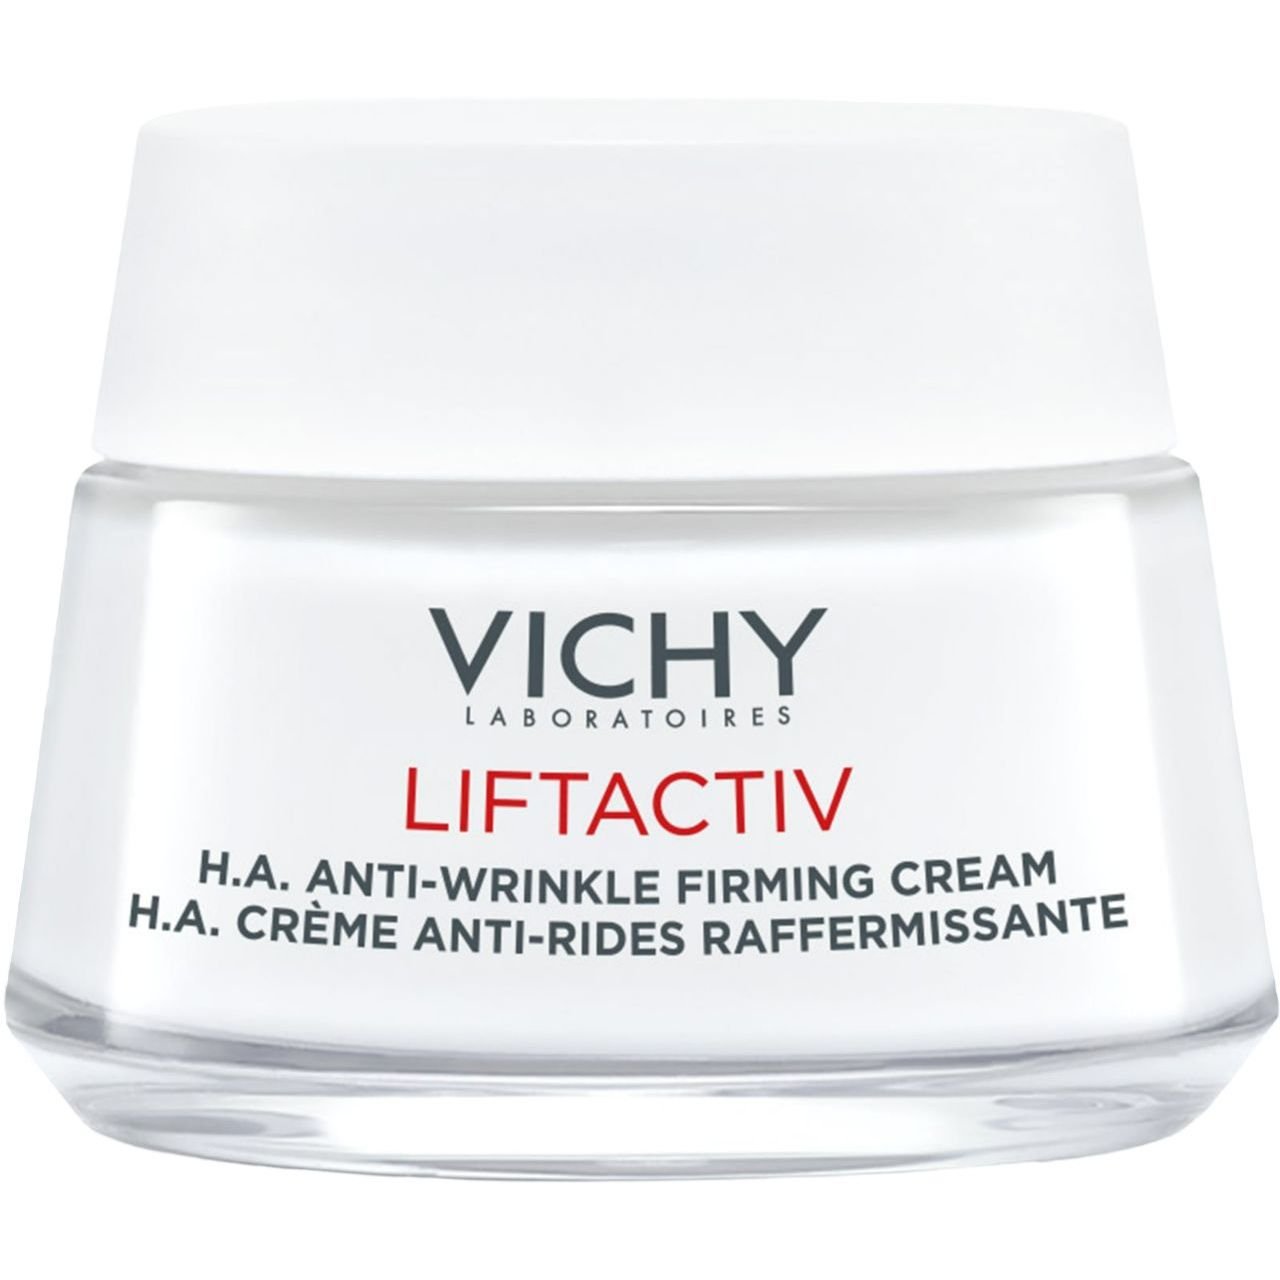 Розгладжувальний крем Vichy Liftactiv H. A. з гіалуроновою кислотою для корекції зморшок для сухої шкіри 50 мл - фото 2